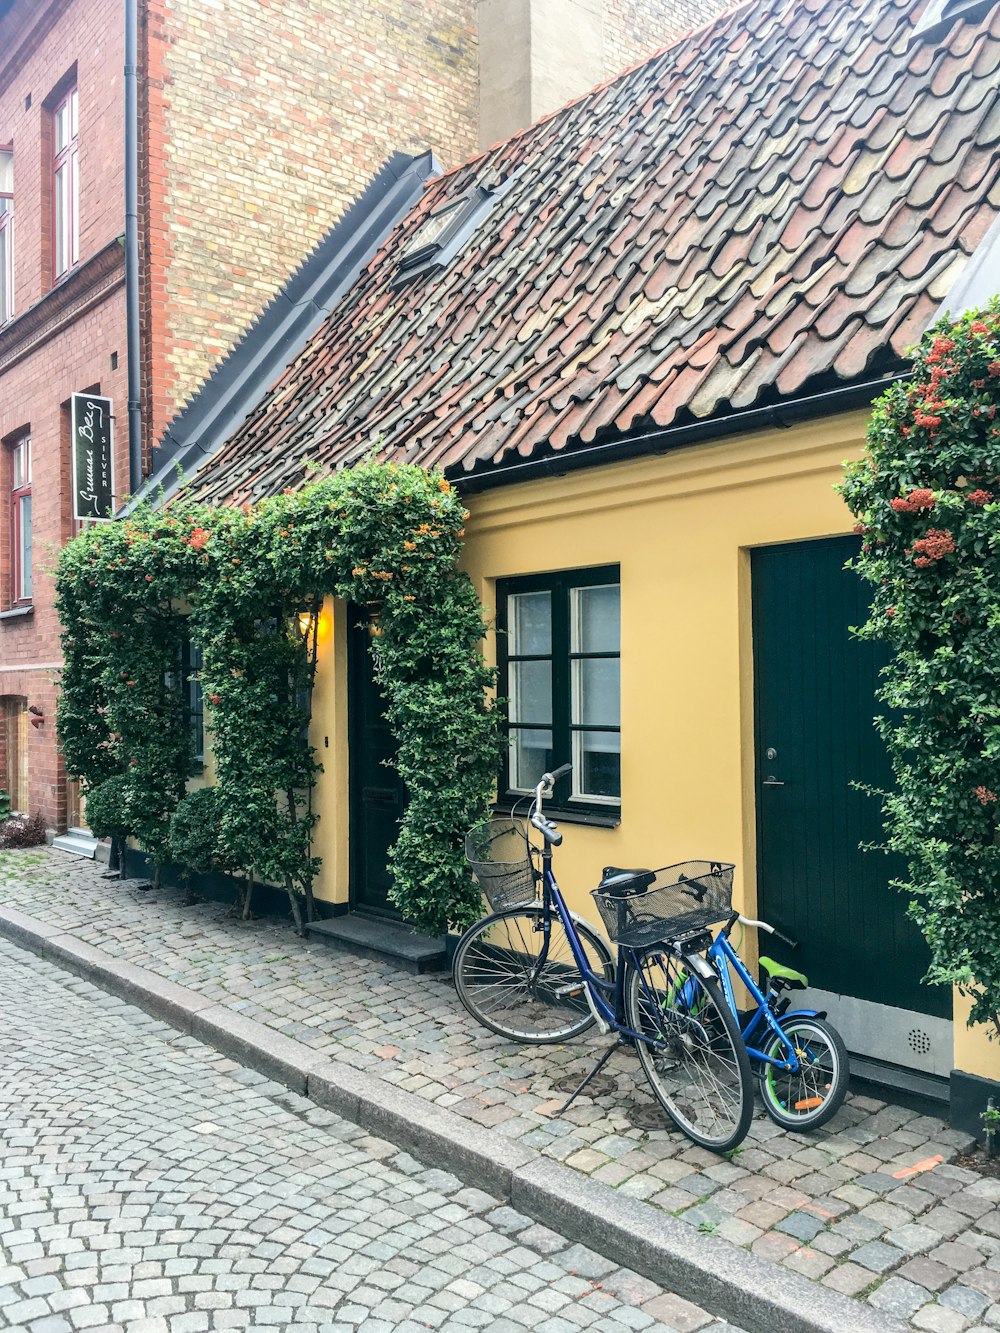 Vélo de croisière bleu garé à côté de la maison jaune et marron